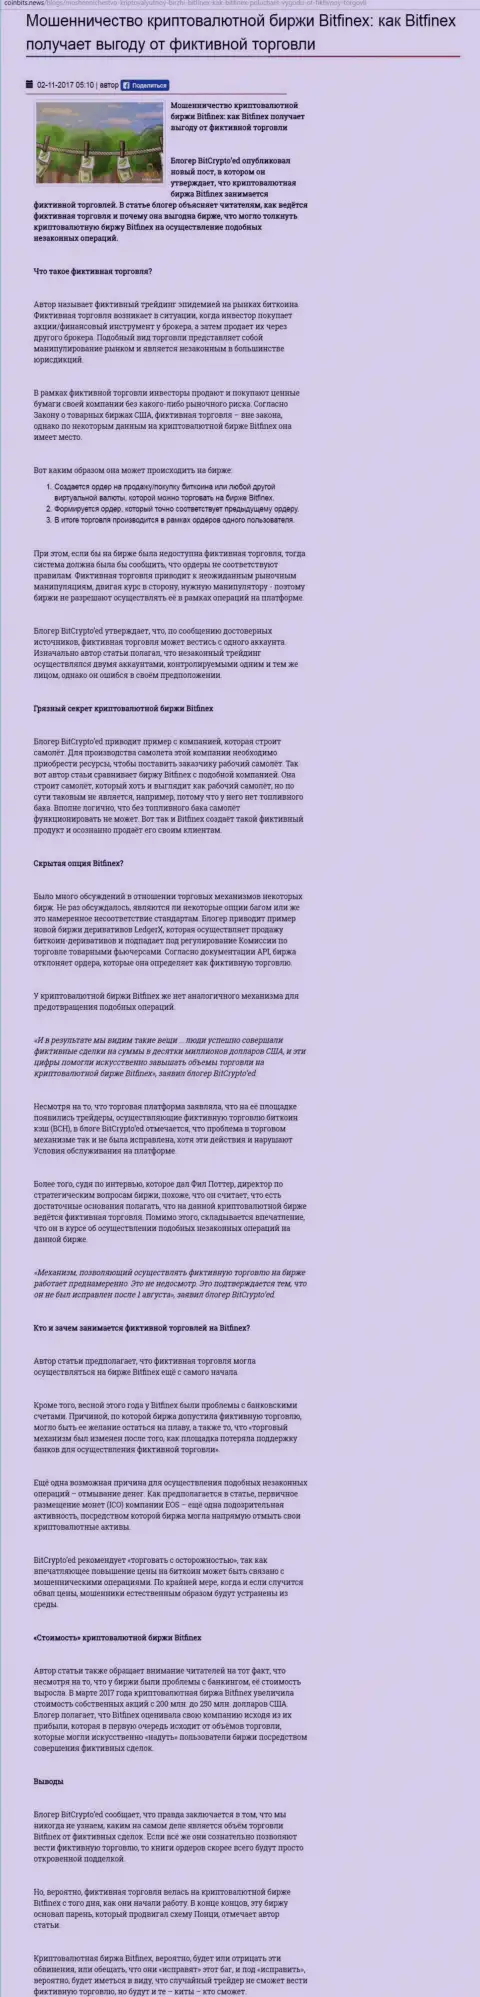 Bitfinex - это МОШЕННИК !!! Достоверные отзывы и факты противоправных действий в обзорной статье